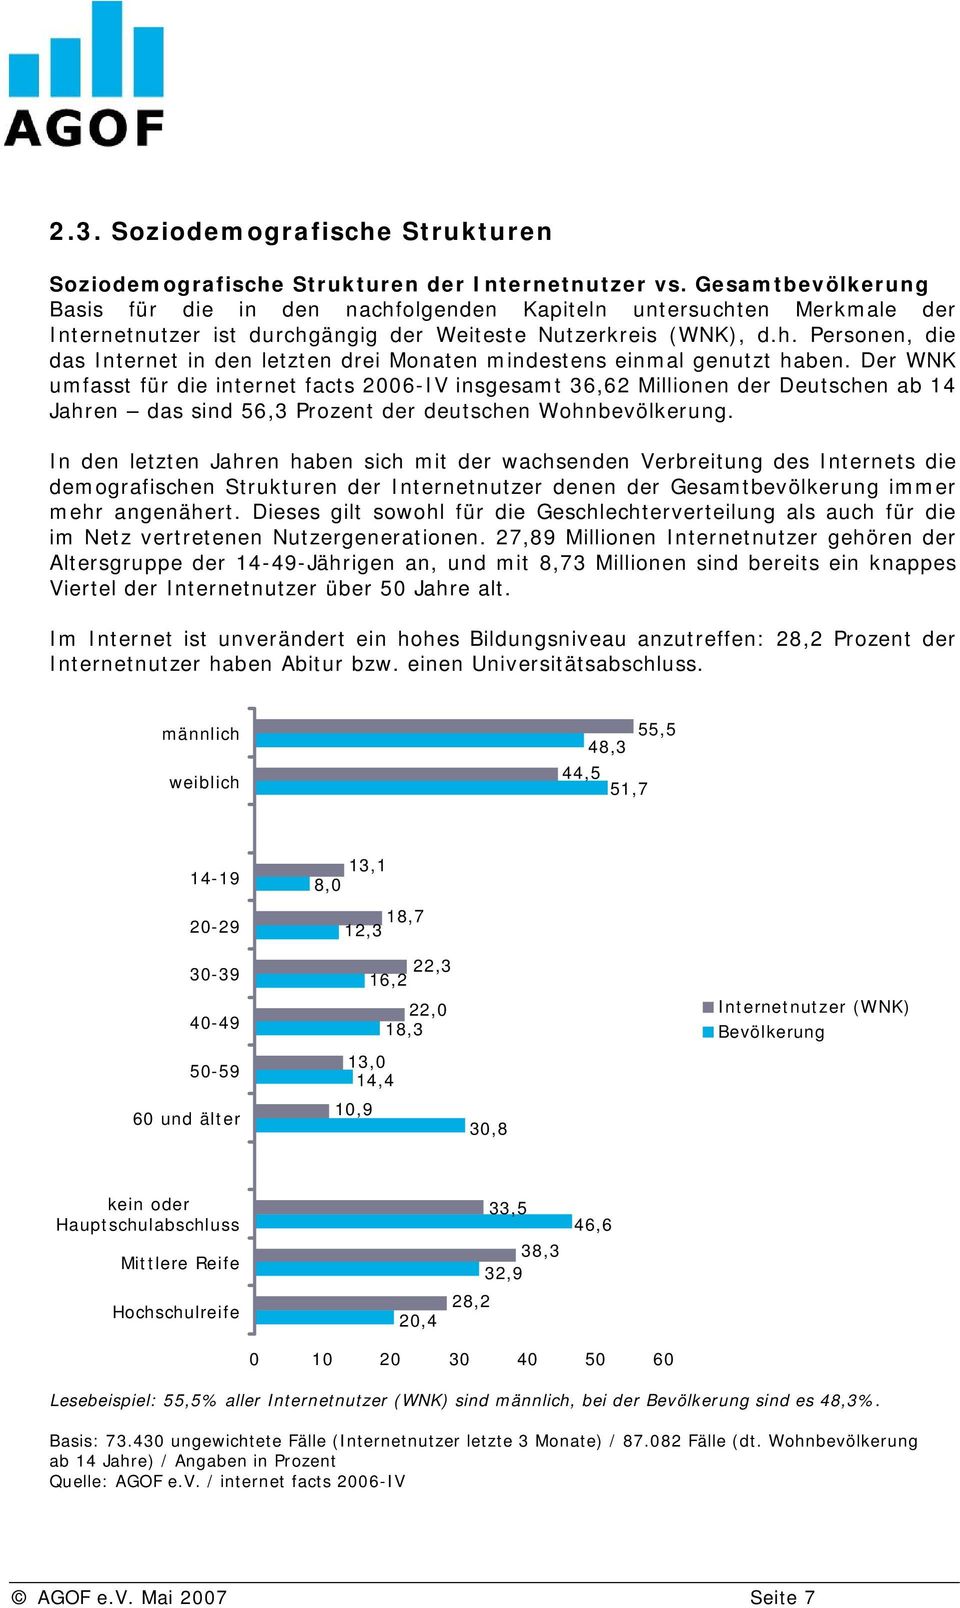 Der WNK umfasst für die internet facts 2006-IV insgesamt 36,62 Millionen der Deutschen ab 14 Jahren das sind 56,3 Prozent der deutschen Wohnbevölkerung.